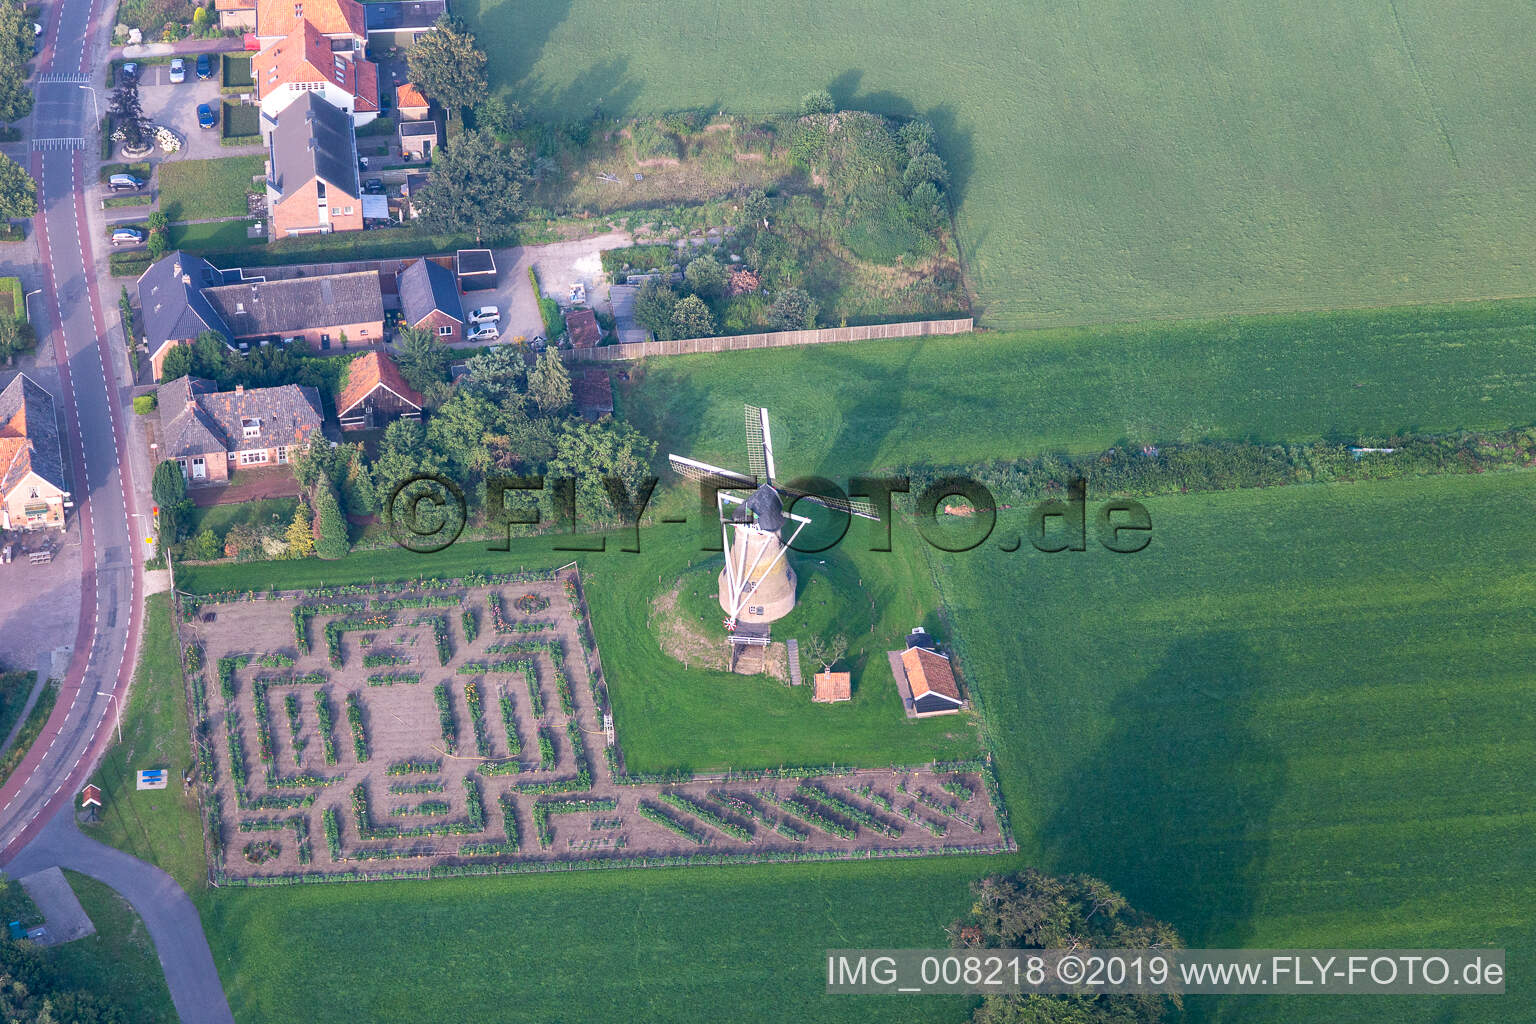 Luftbild von Kerkemeijer in Rekken im Bundesland Gelderland, Niederlande